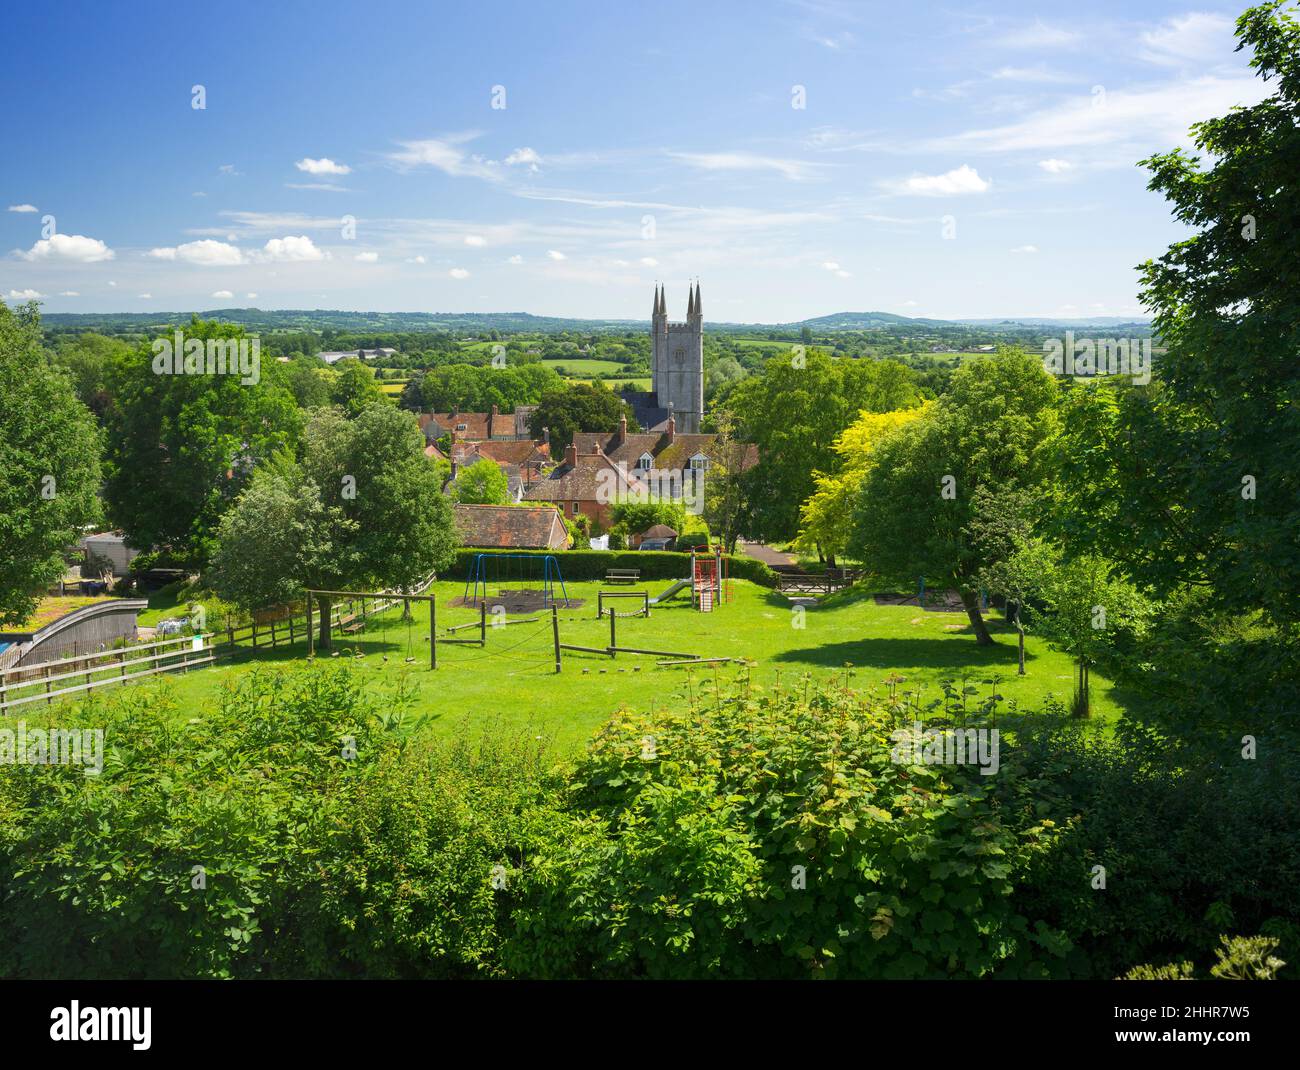 Le village de Mere et la tour de l'église St Michael dans le Wiltshire, vus de Castle Hill en été. Banque D'Images